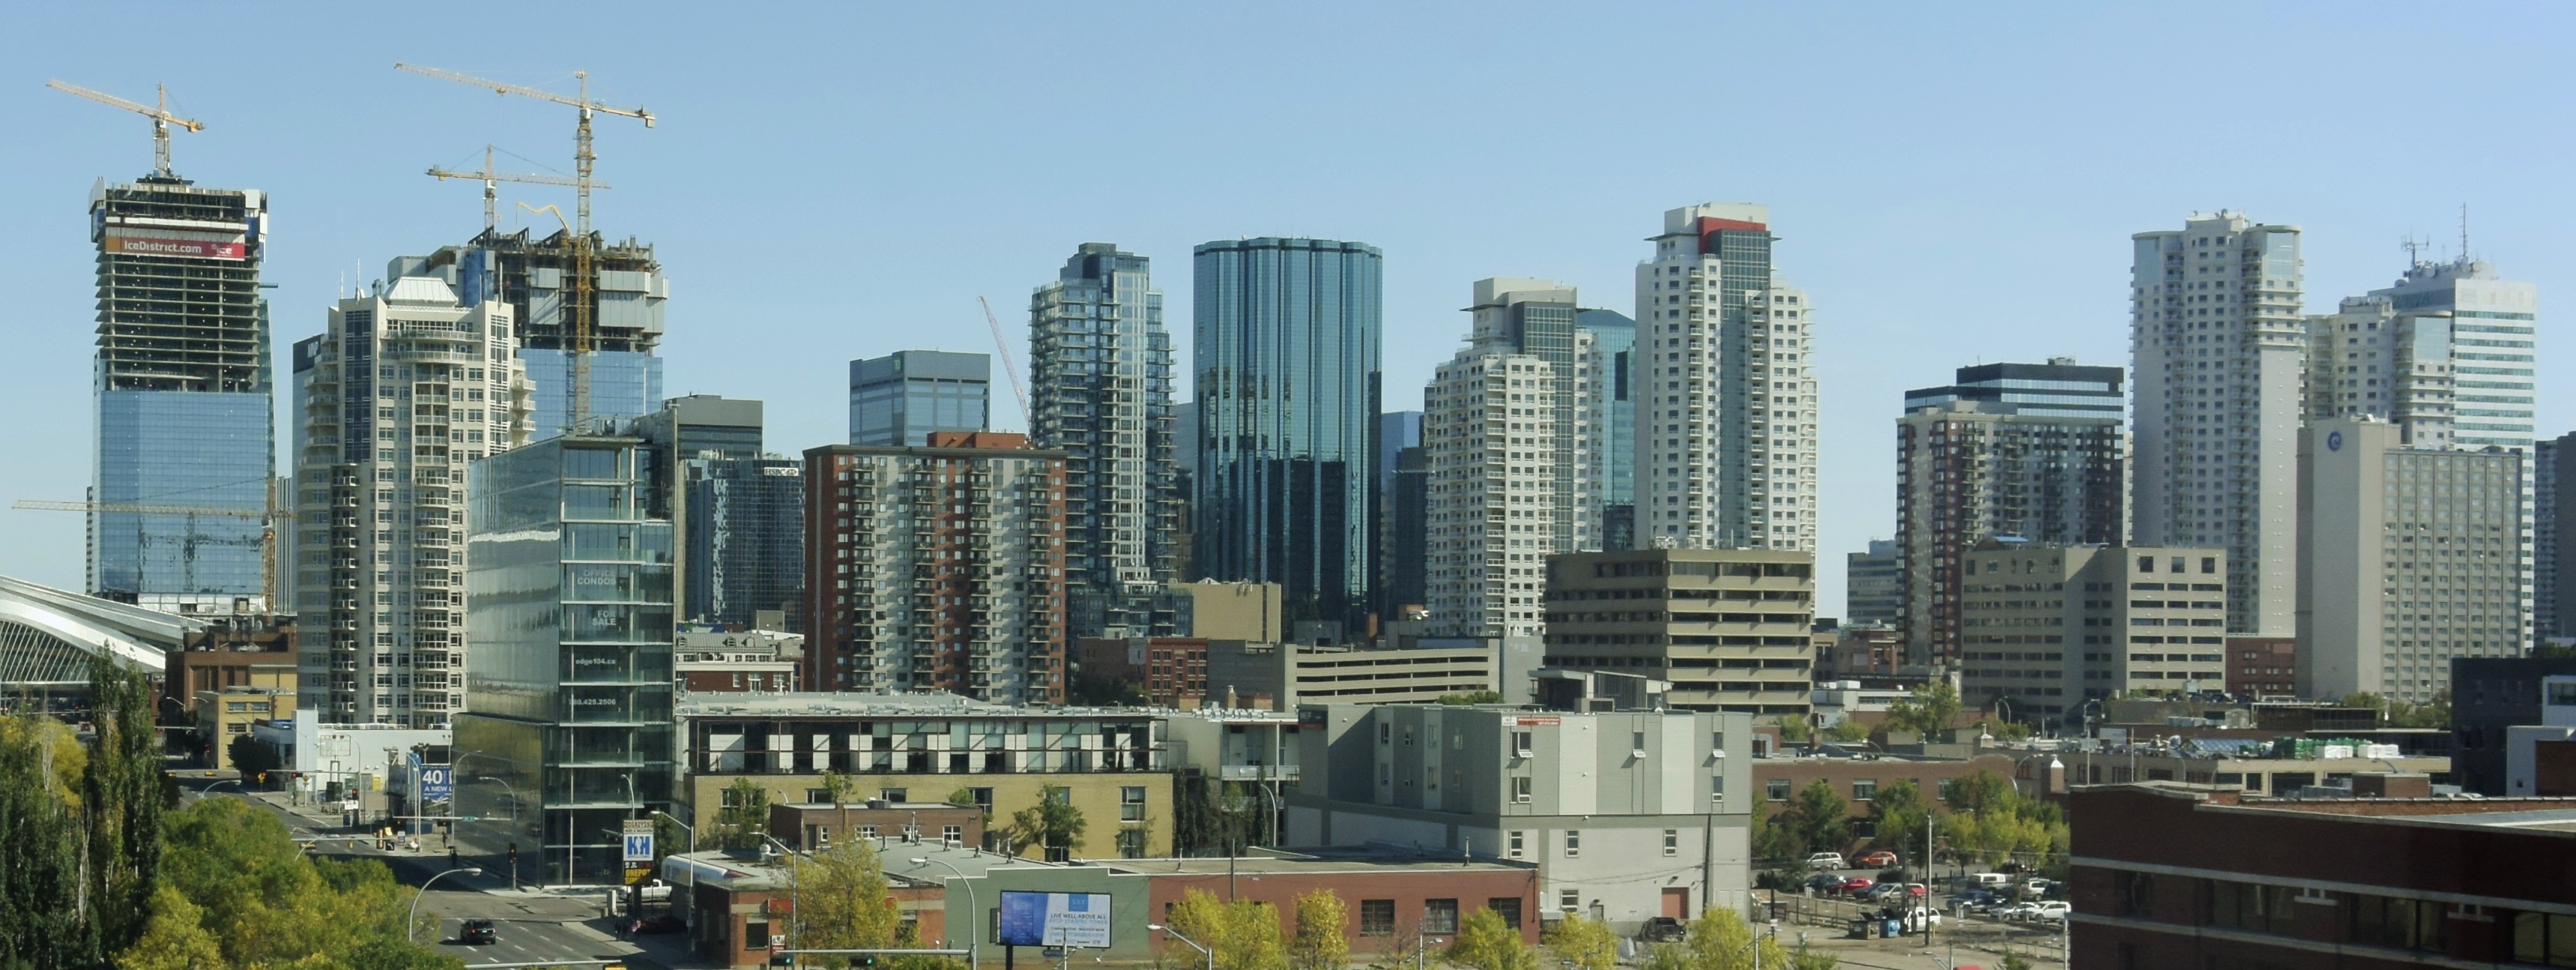 List of tallest buildings in Edmonton - Wikipedia